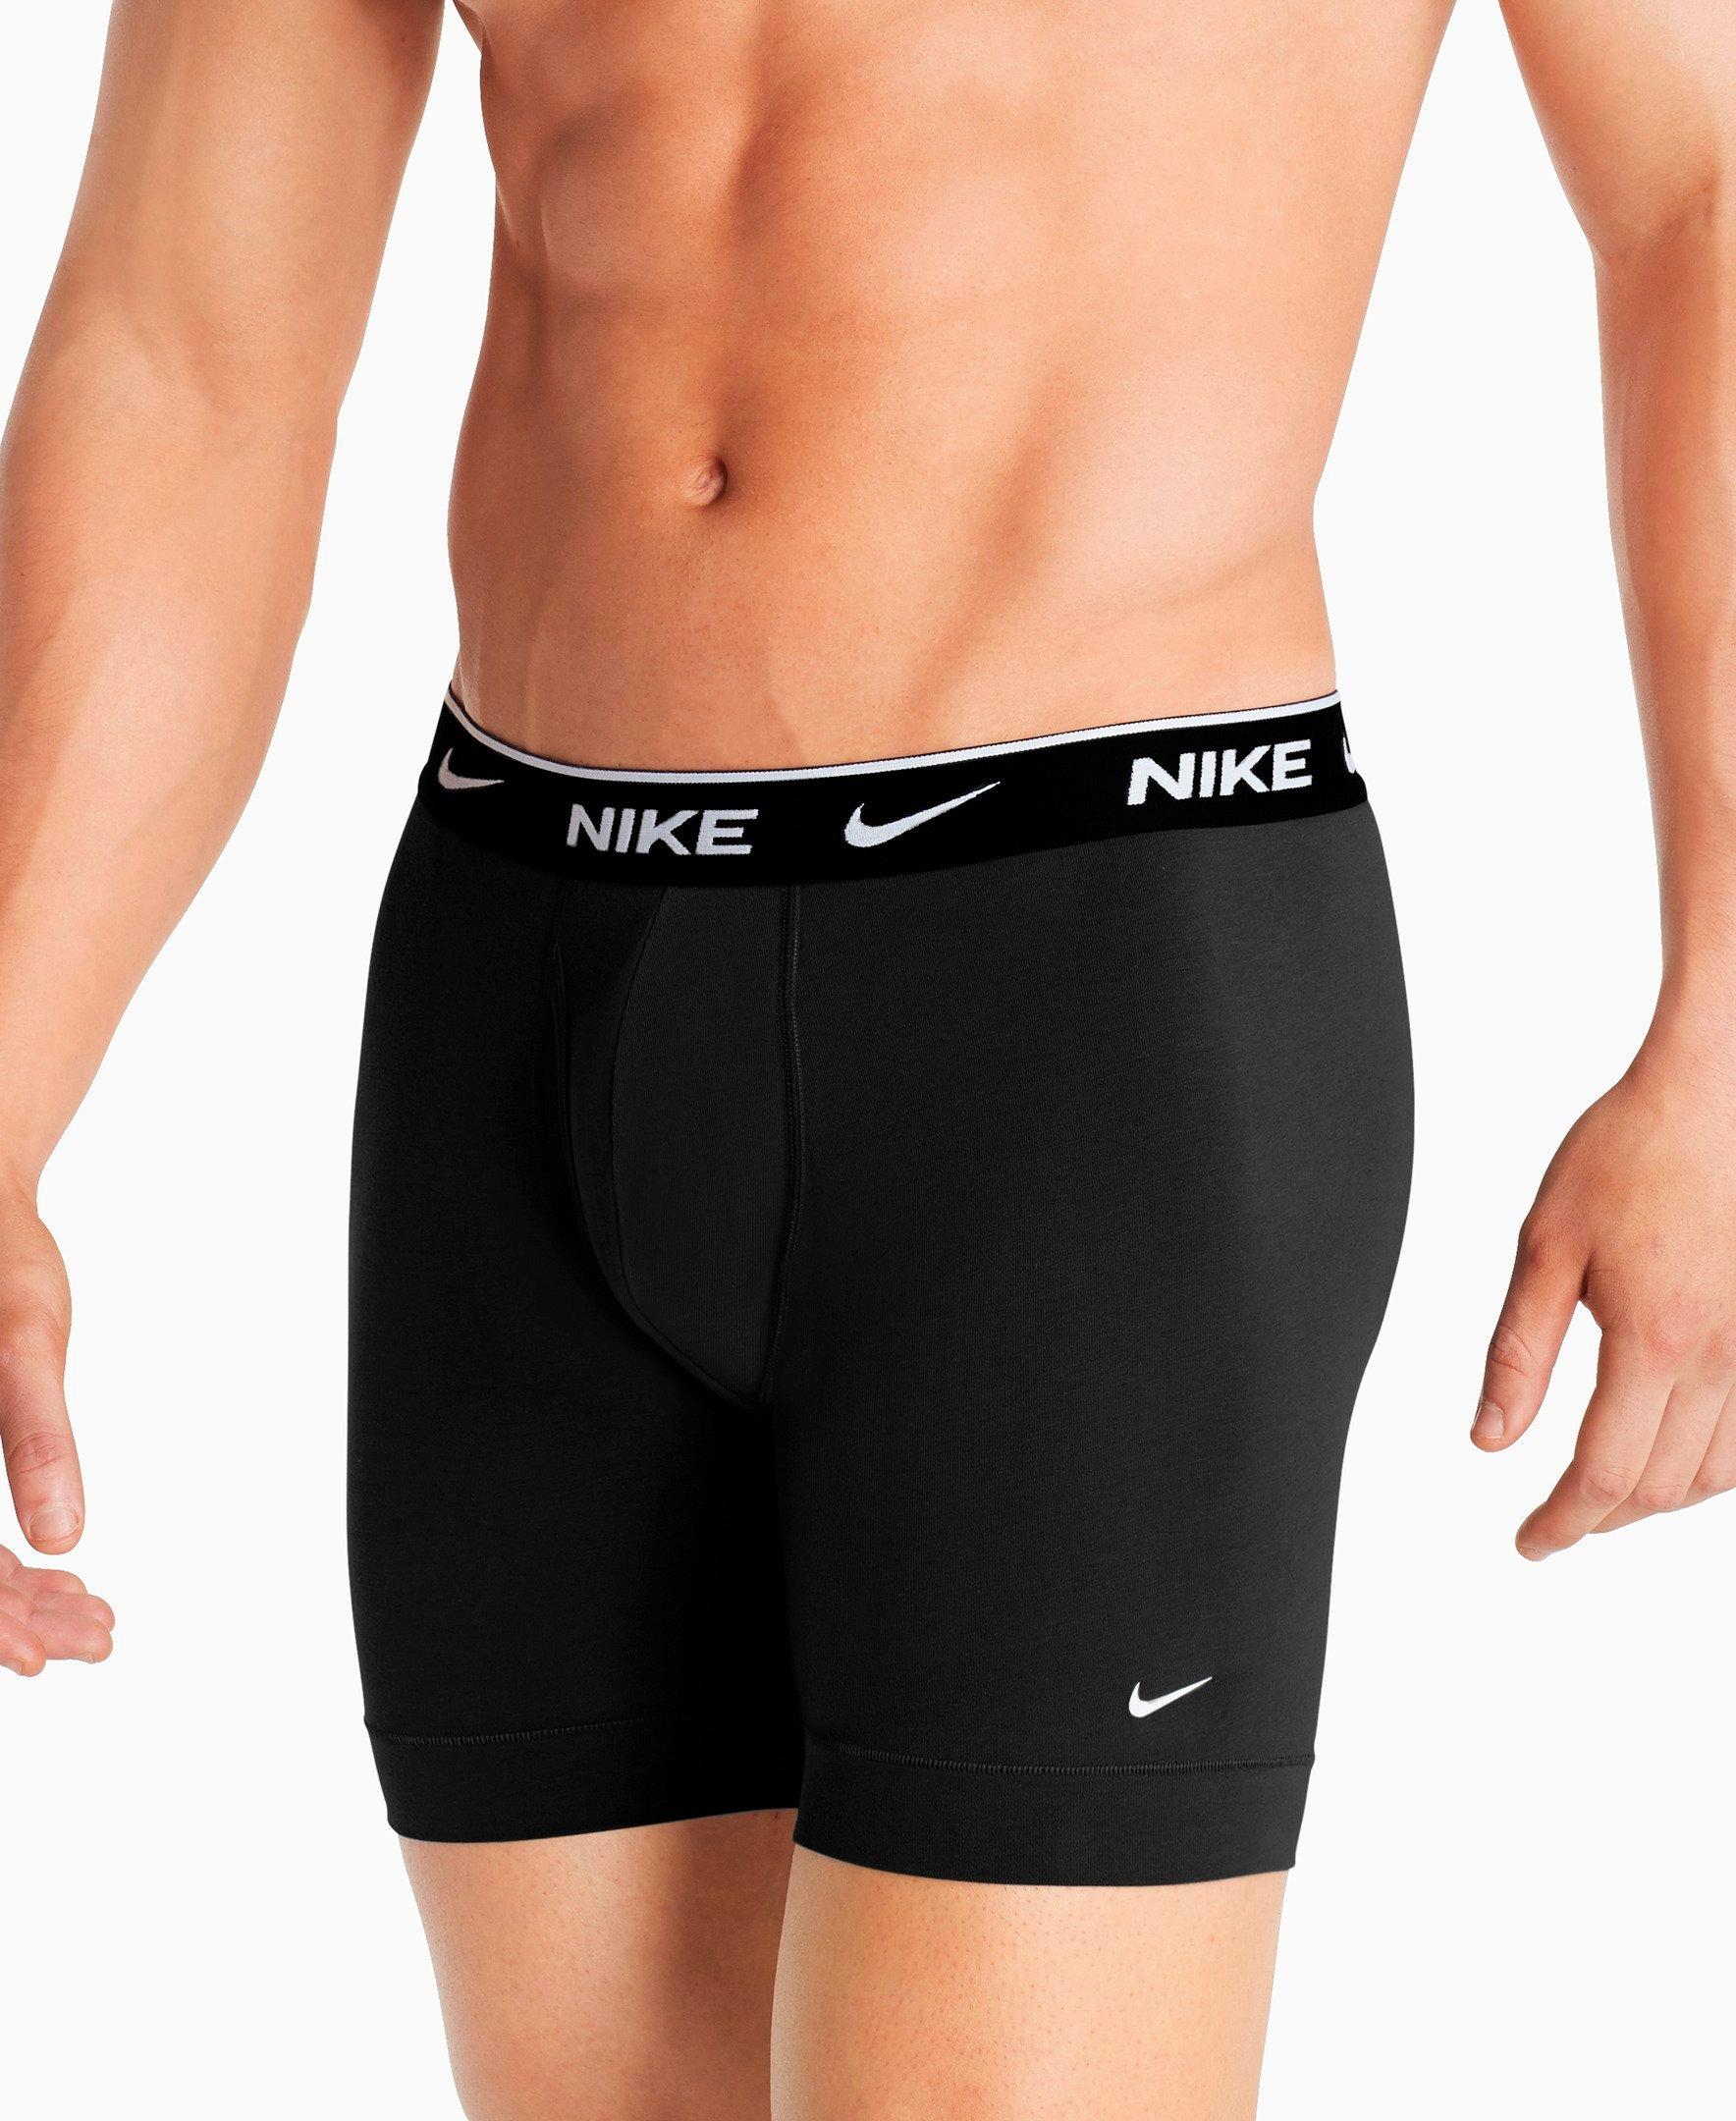 Men's Nike Underwear Everyday Cotton 